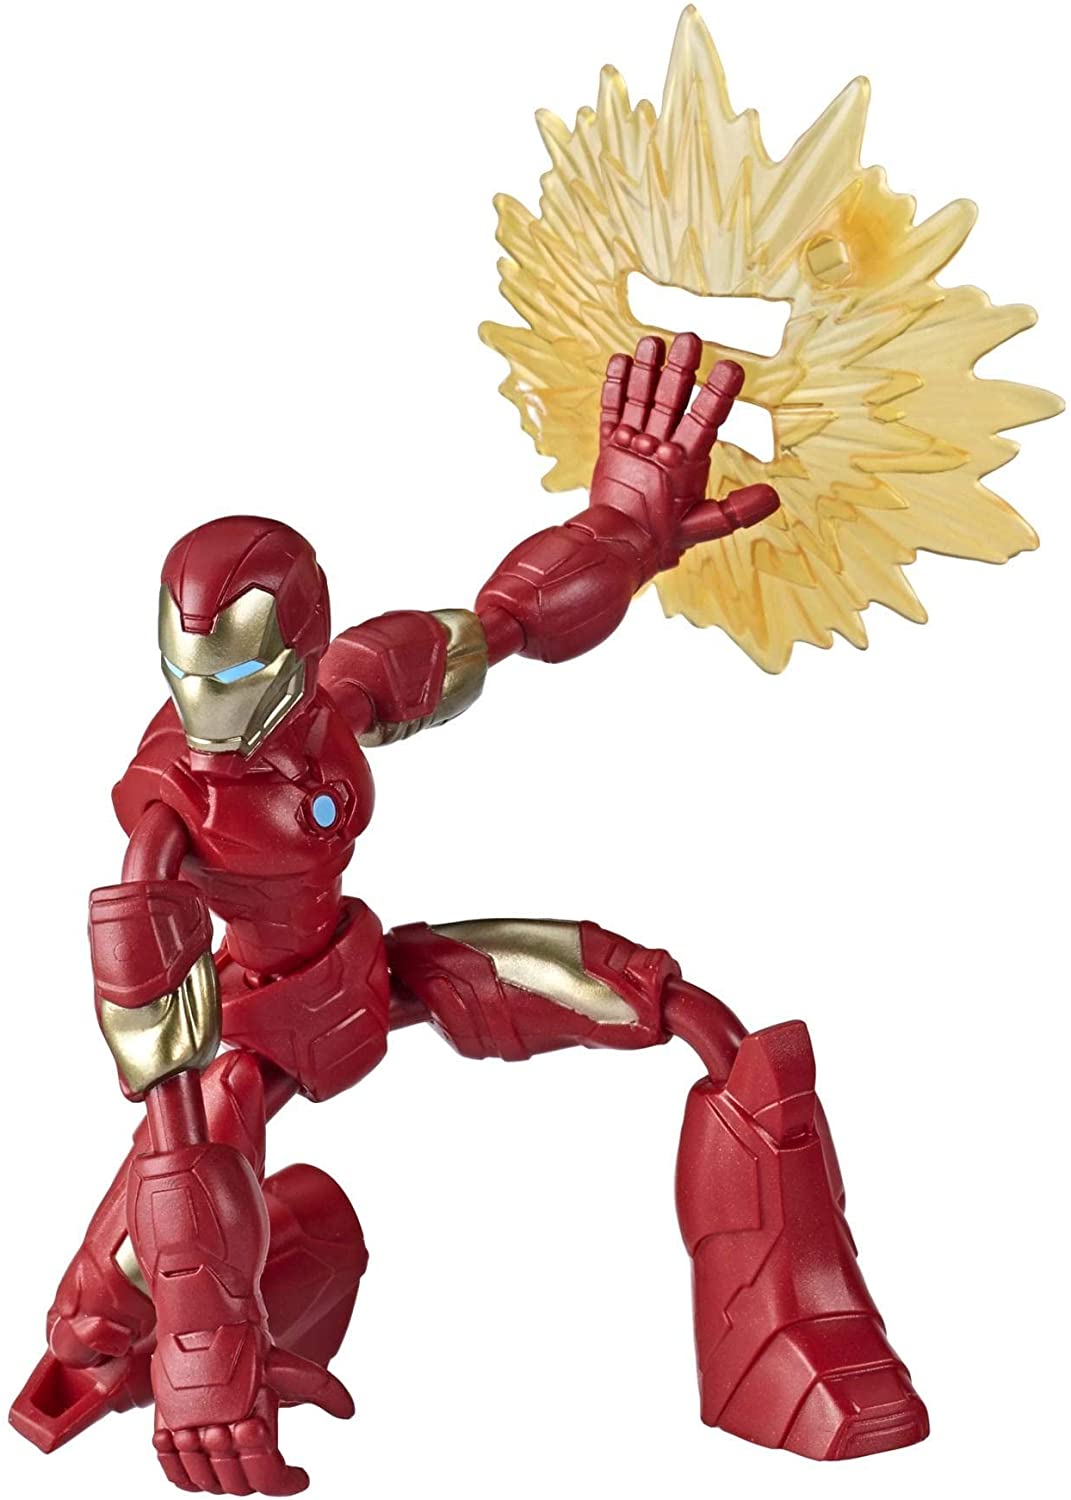 Marvel E7870 Avengers Bend and Flex Action Figurine Iron Man flexible de 6 pouces